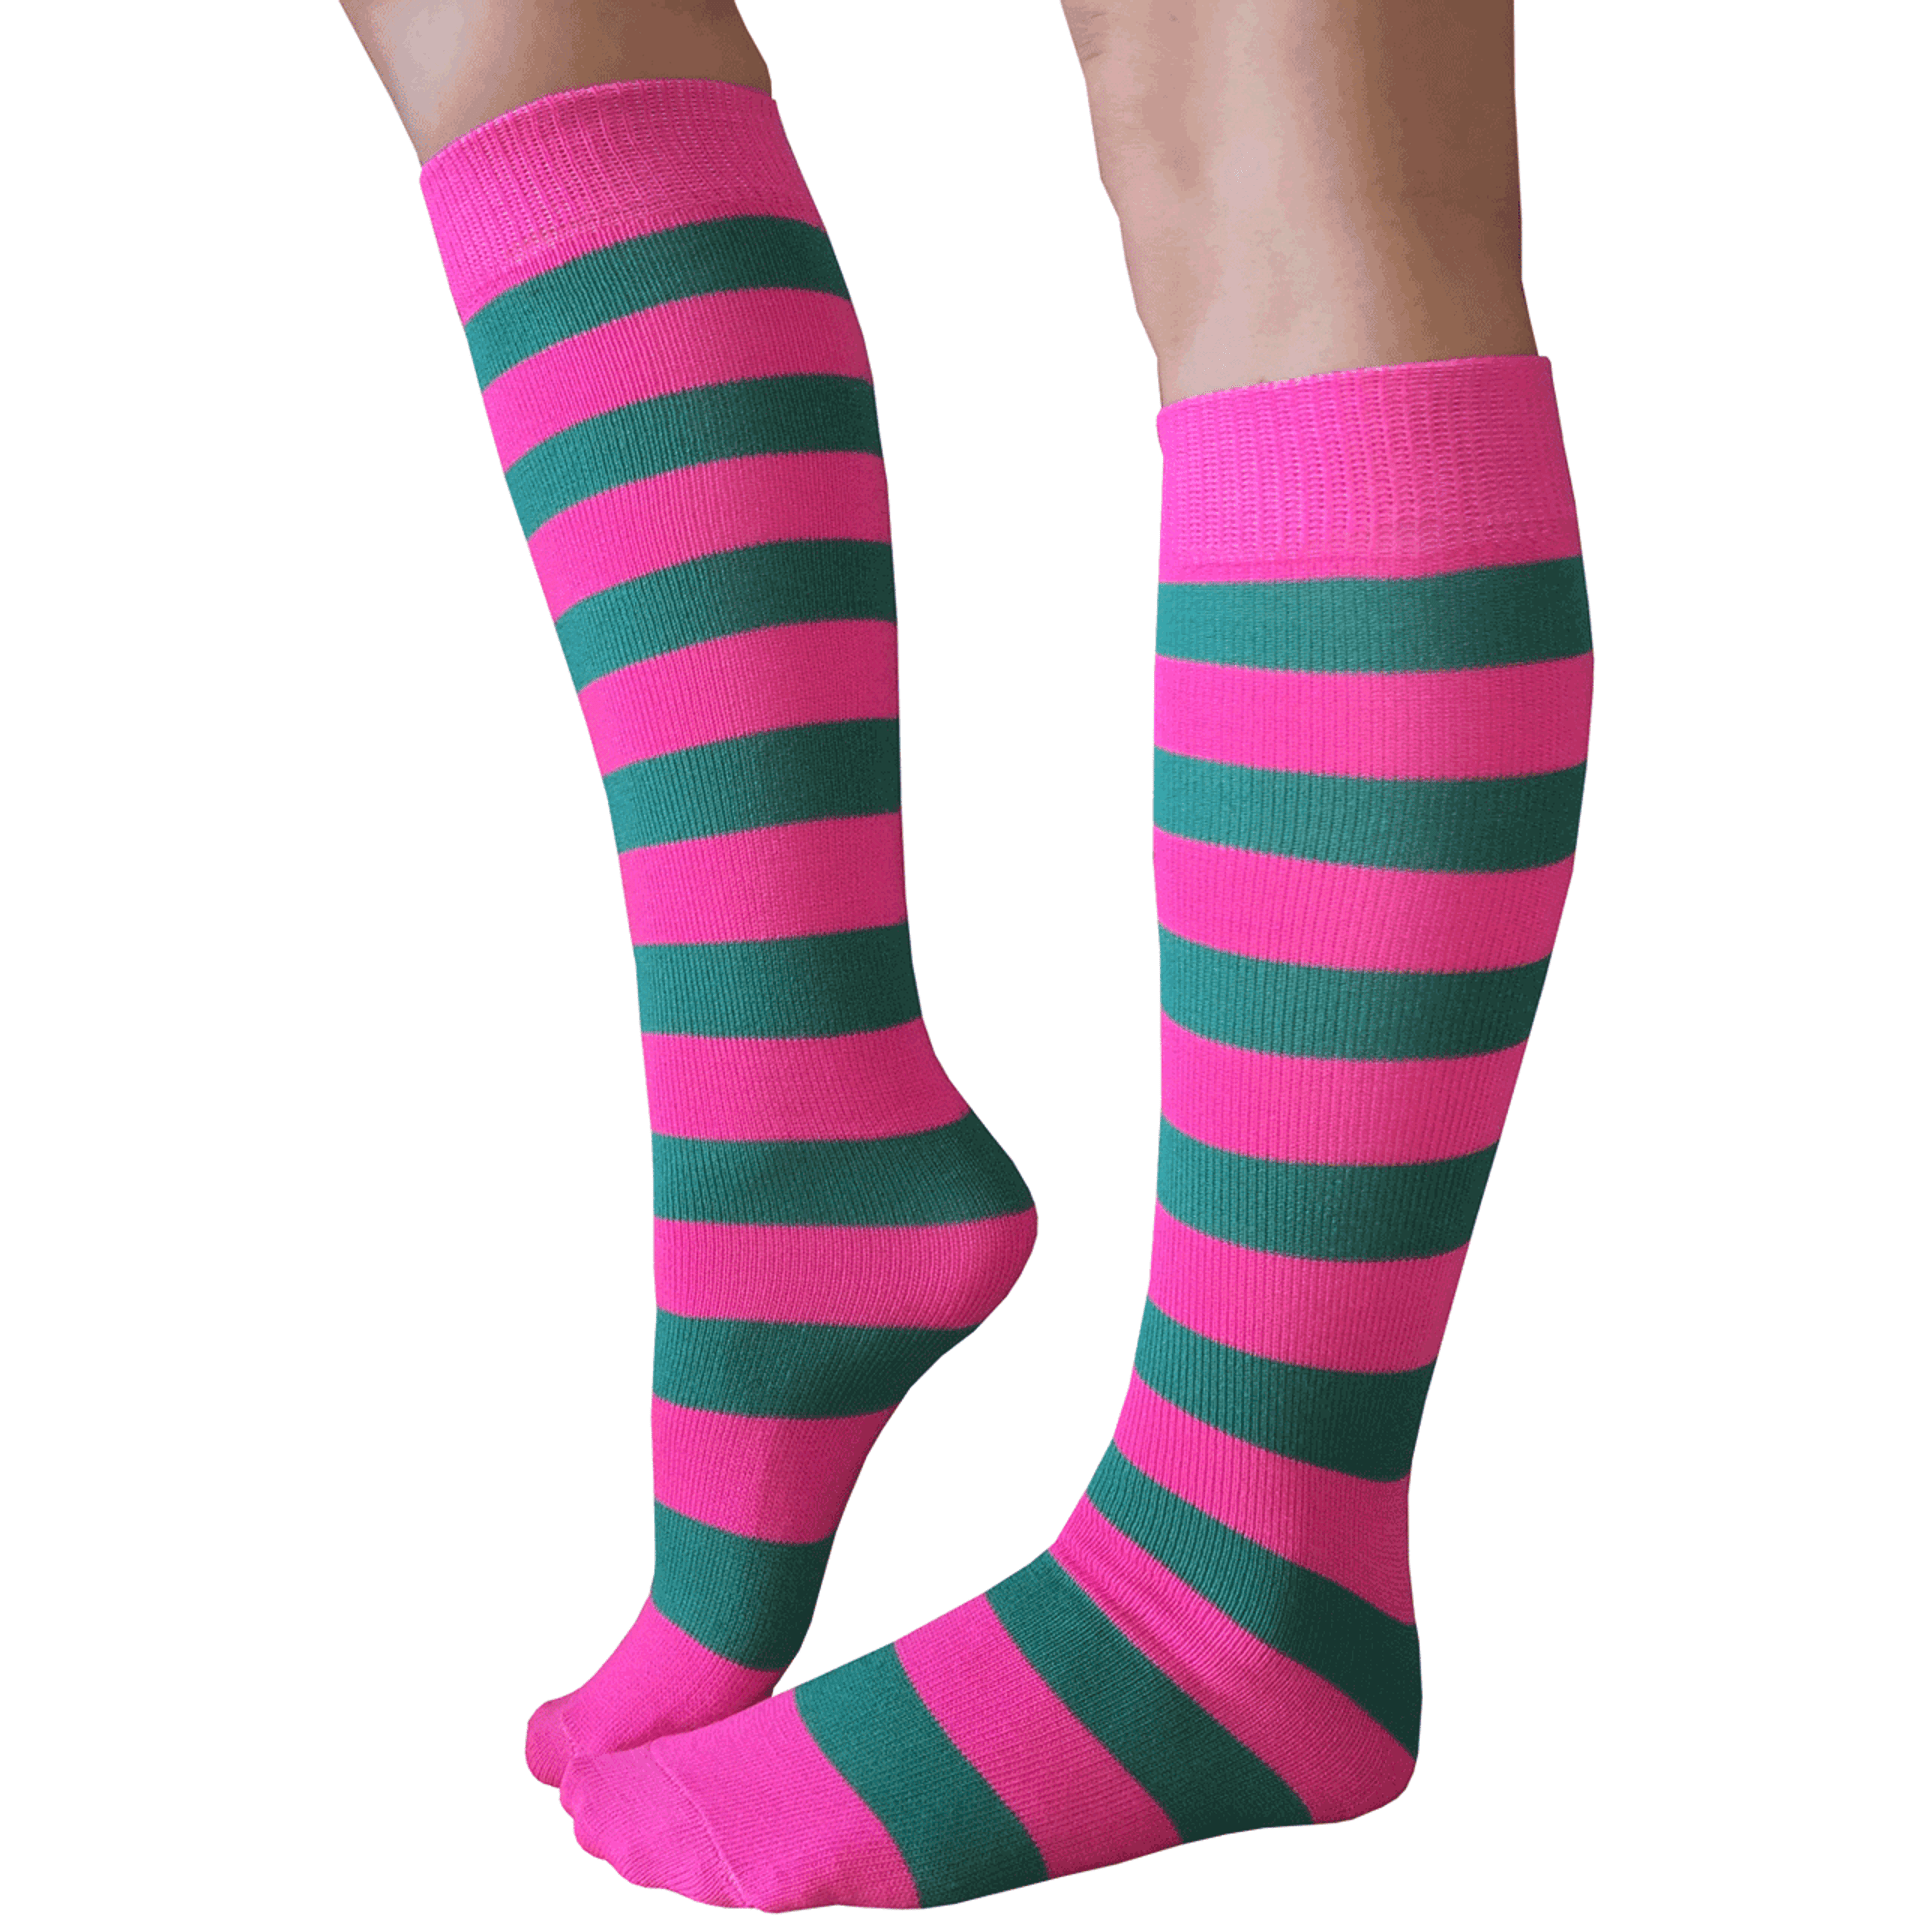 Striped Neon Pink/Teal Knee Socks